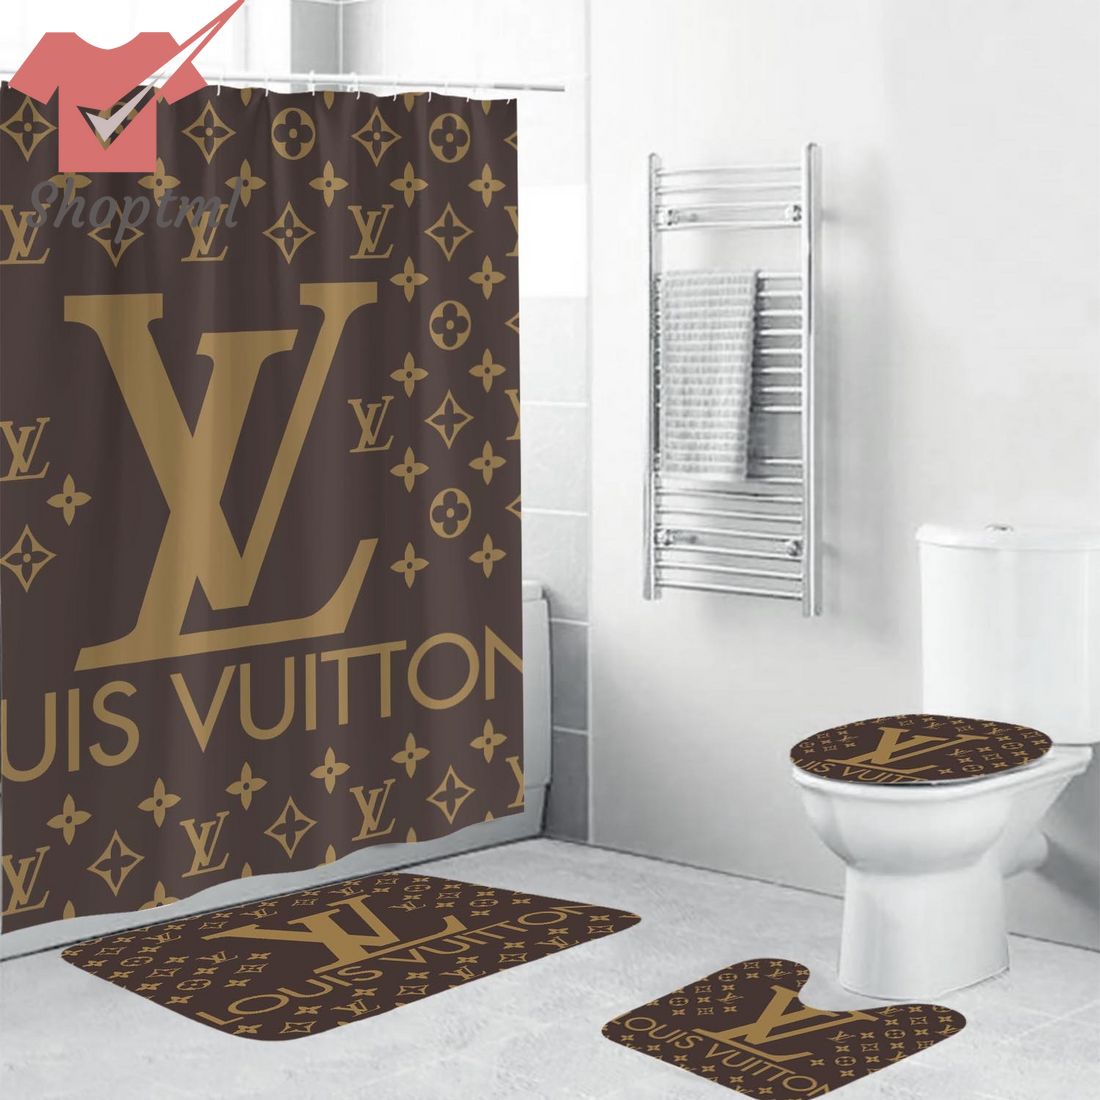 Louis Vuitton Bathroom Set Luxury Shower Curtain Luxury Brand